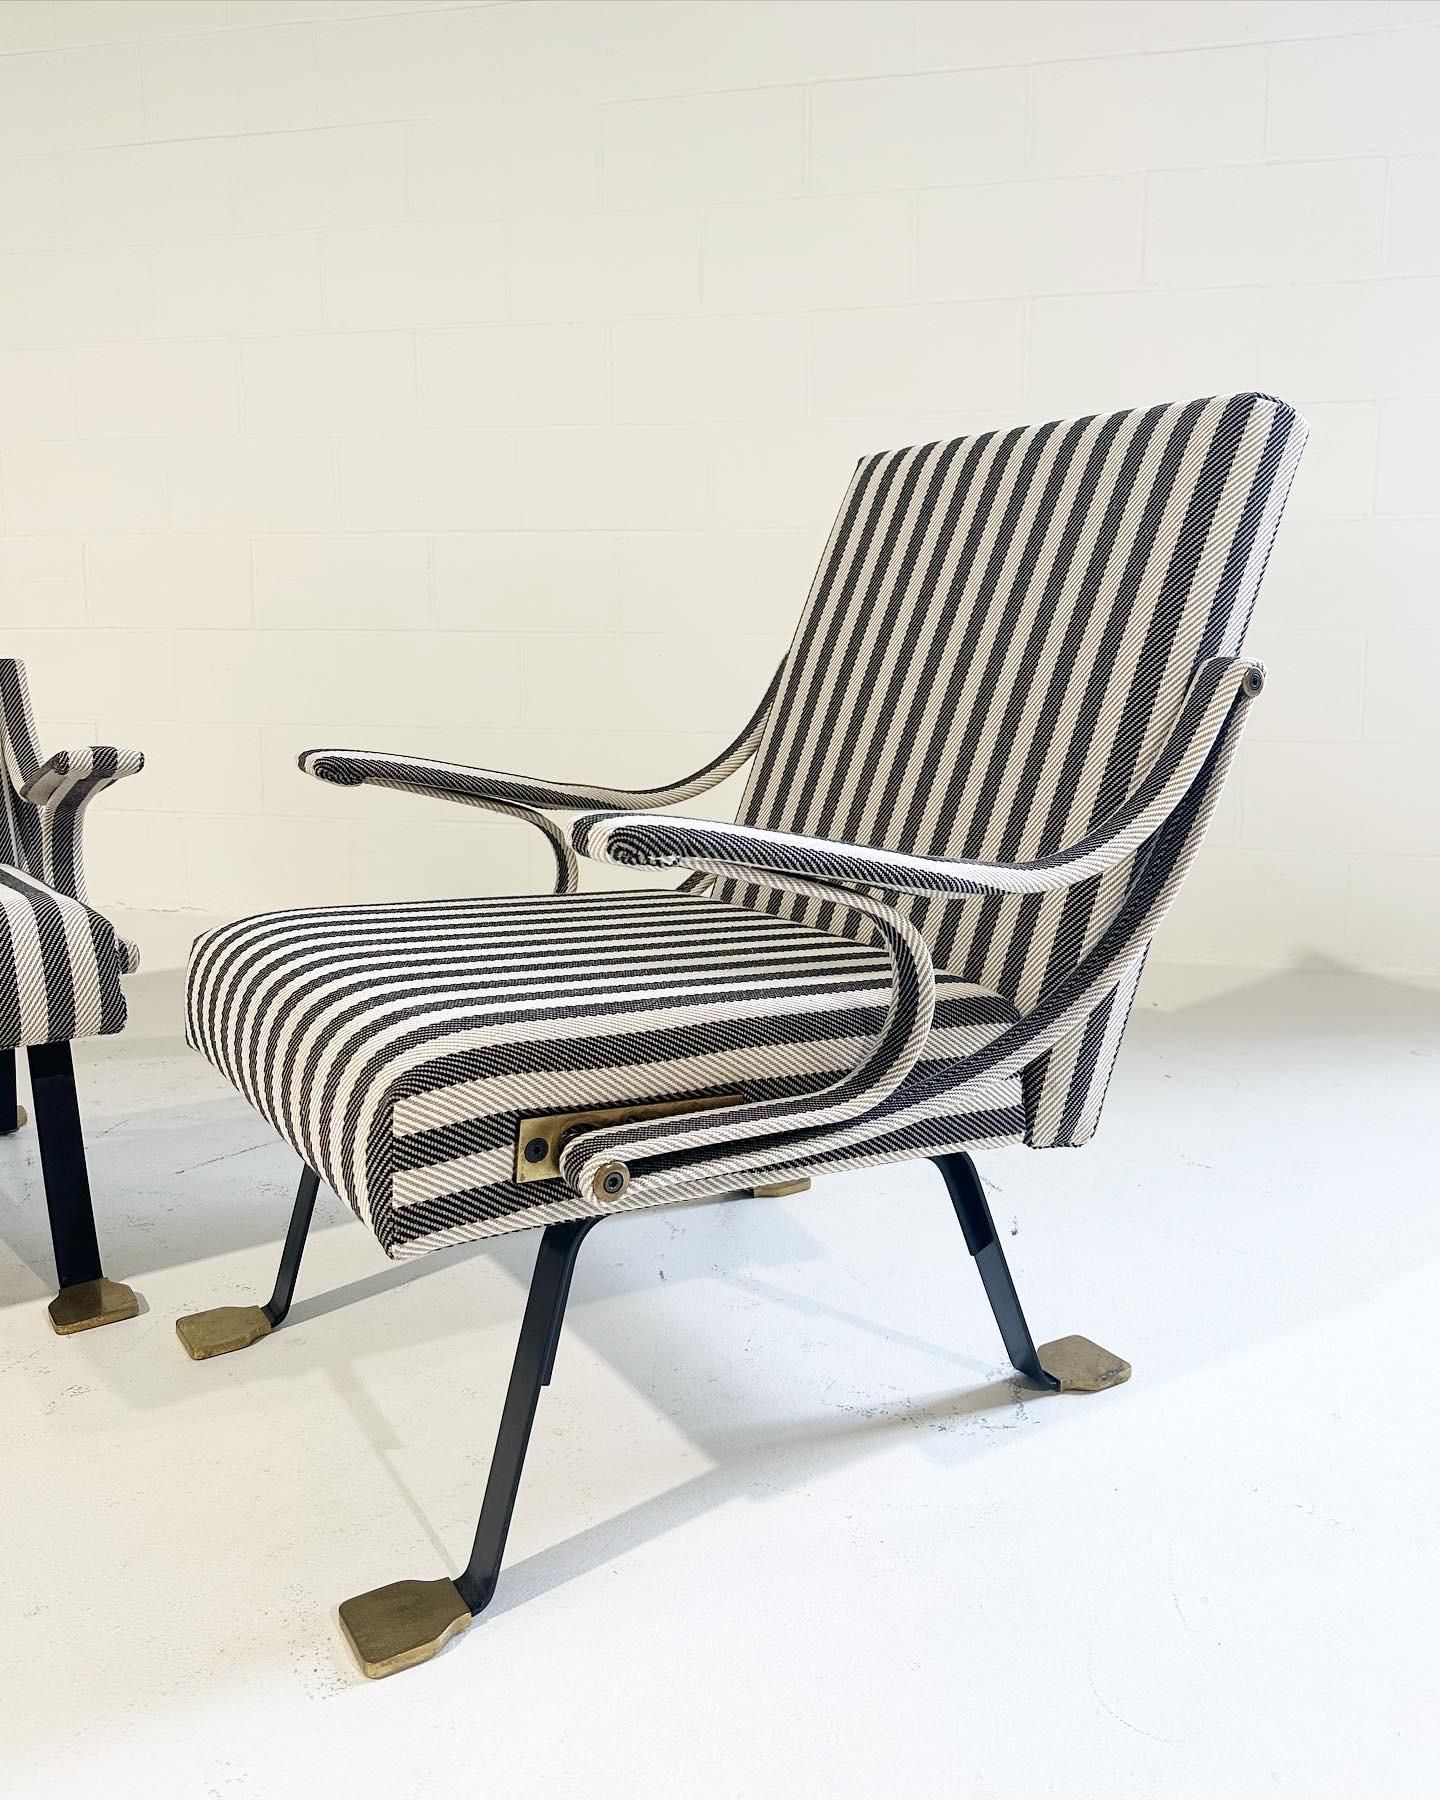 Das Design von Digamma ist eine bequeme Chaiselongue mit einer Metallstruktur. Es gibt einen dreistufigen Verstellmechanismus für mehr Komfort und den berühmtesten Aspekt von allen: die goldenen (Messing-)Entenfüße. Wir haben diese Stühle neu mit